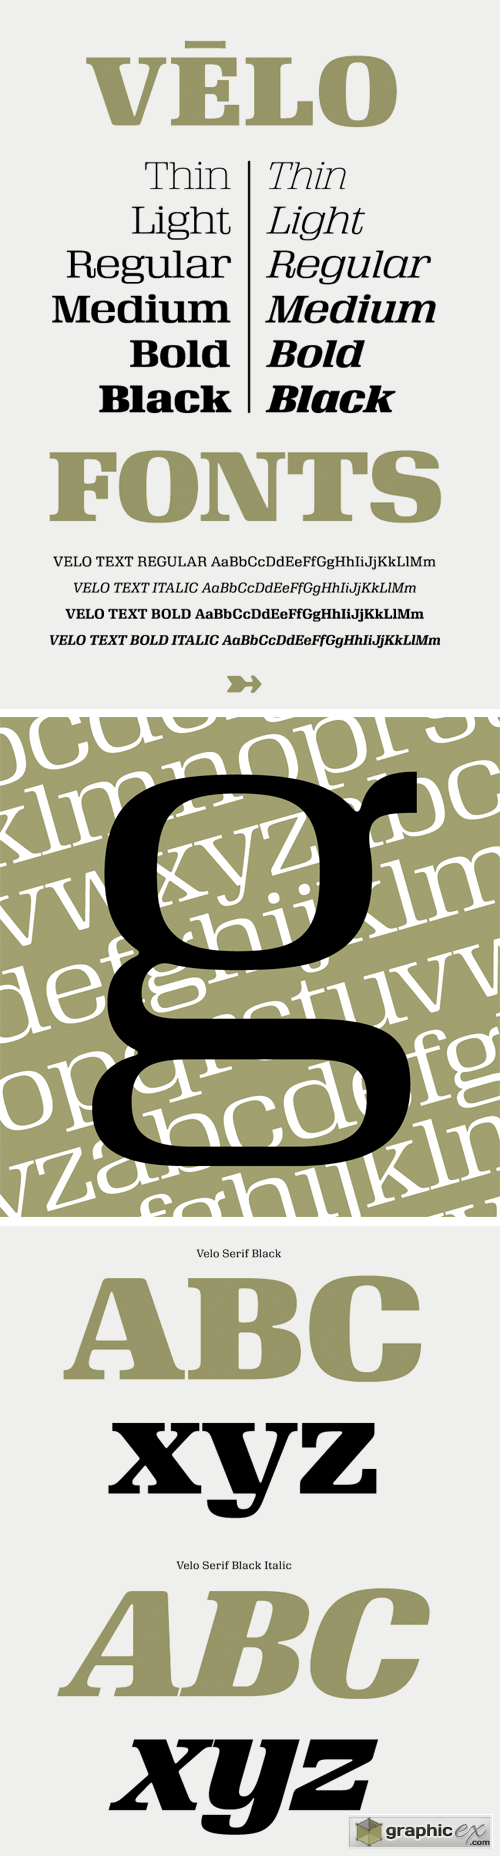 Velo Serif Font Family